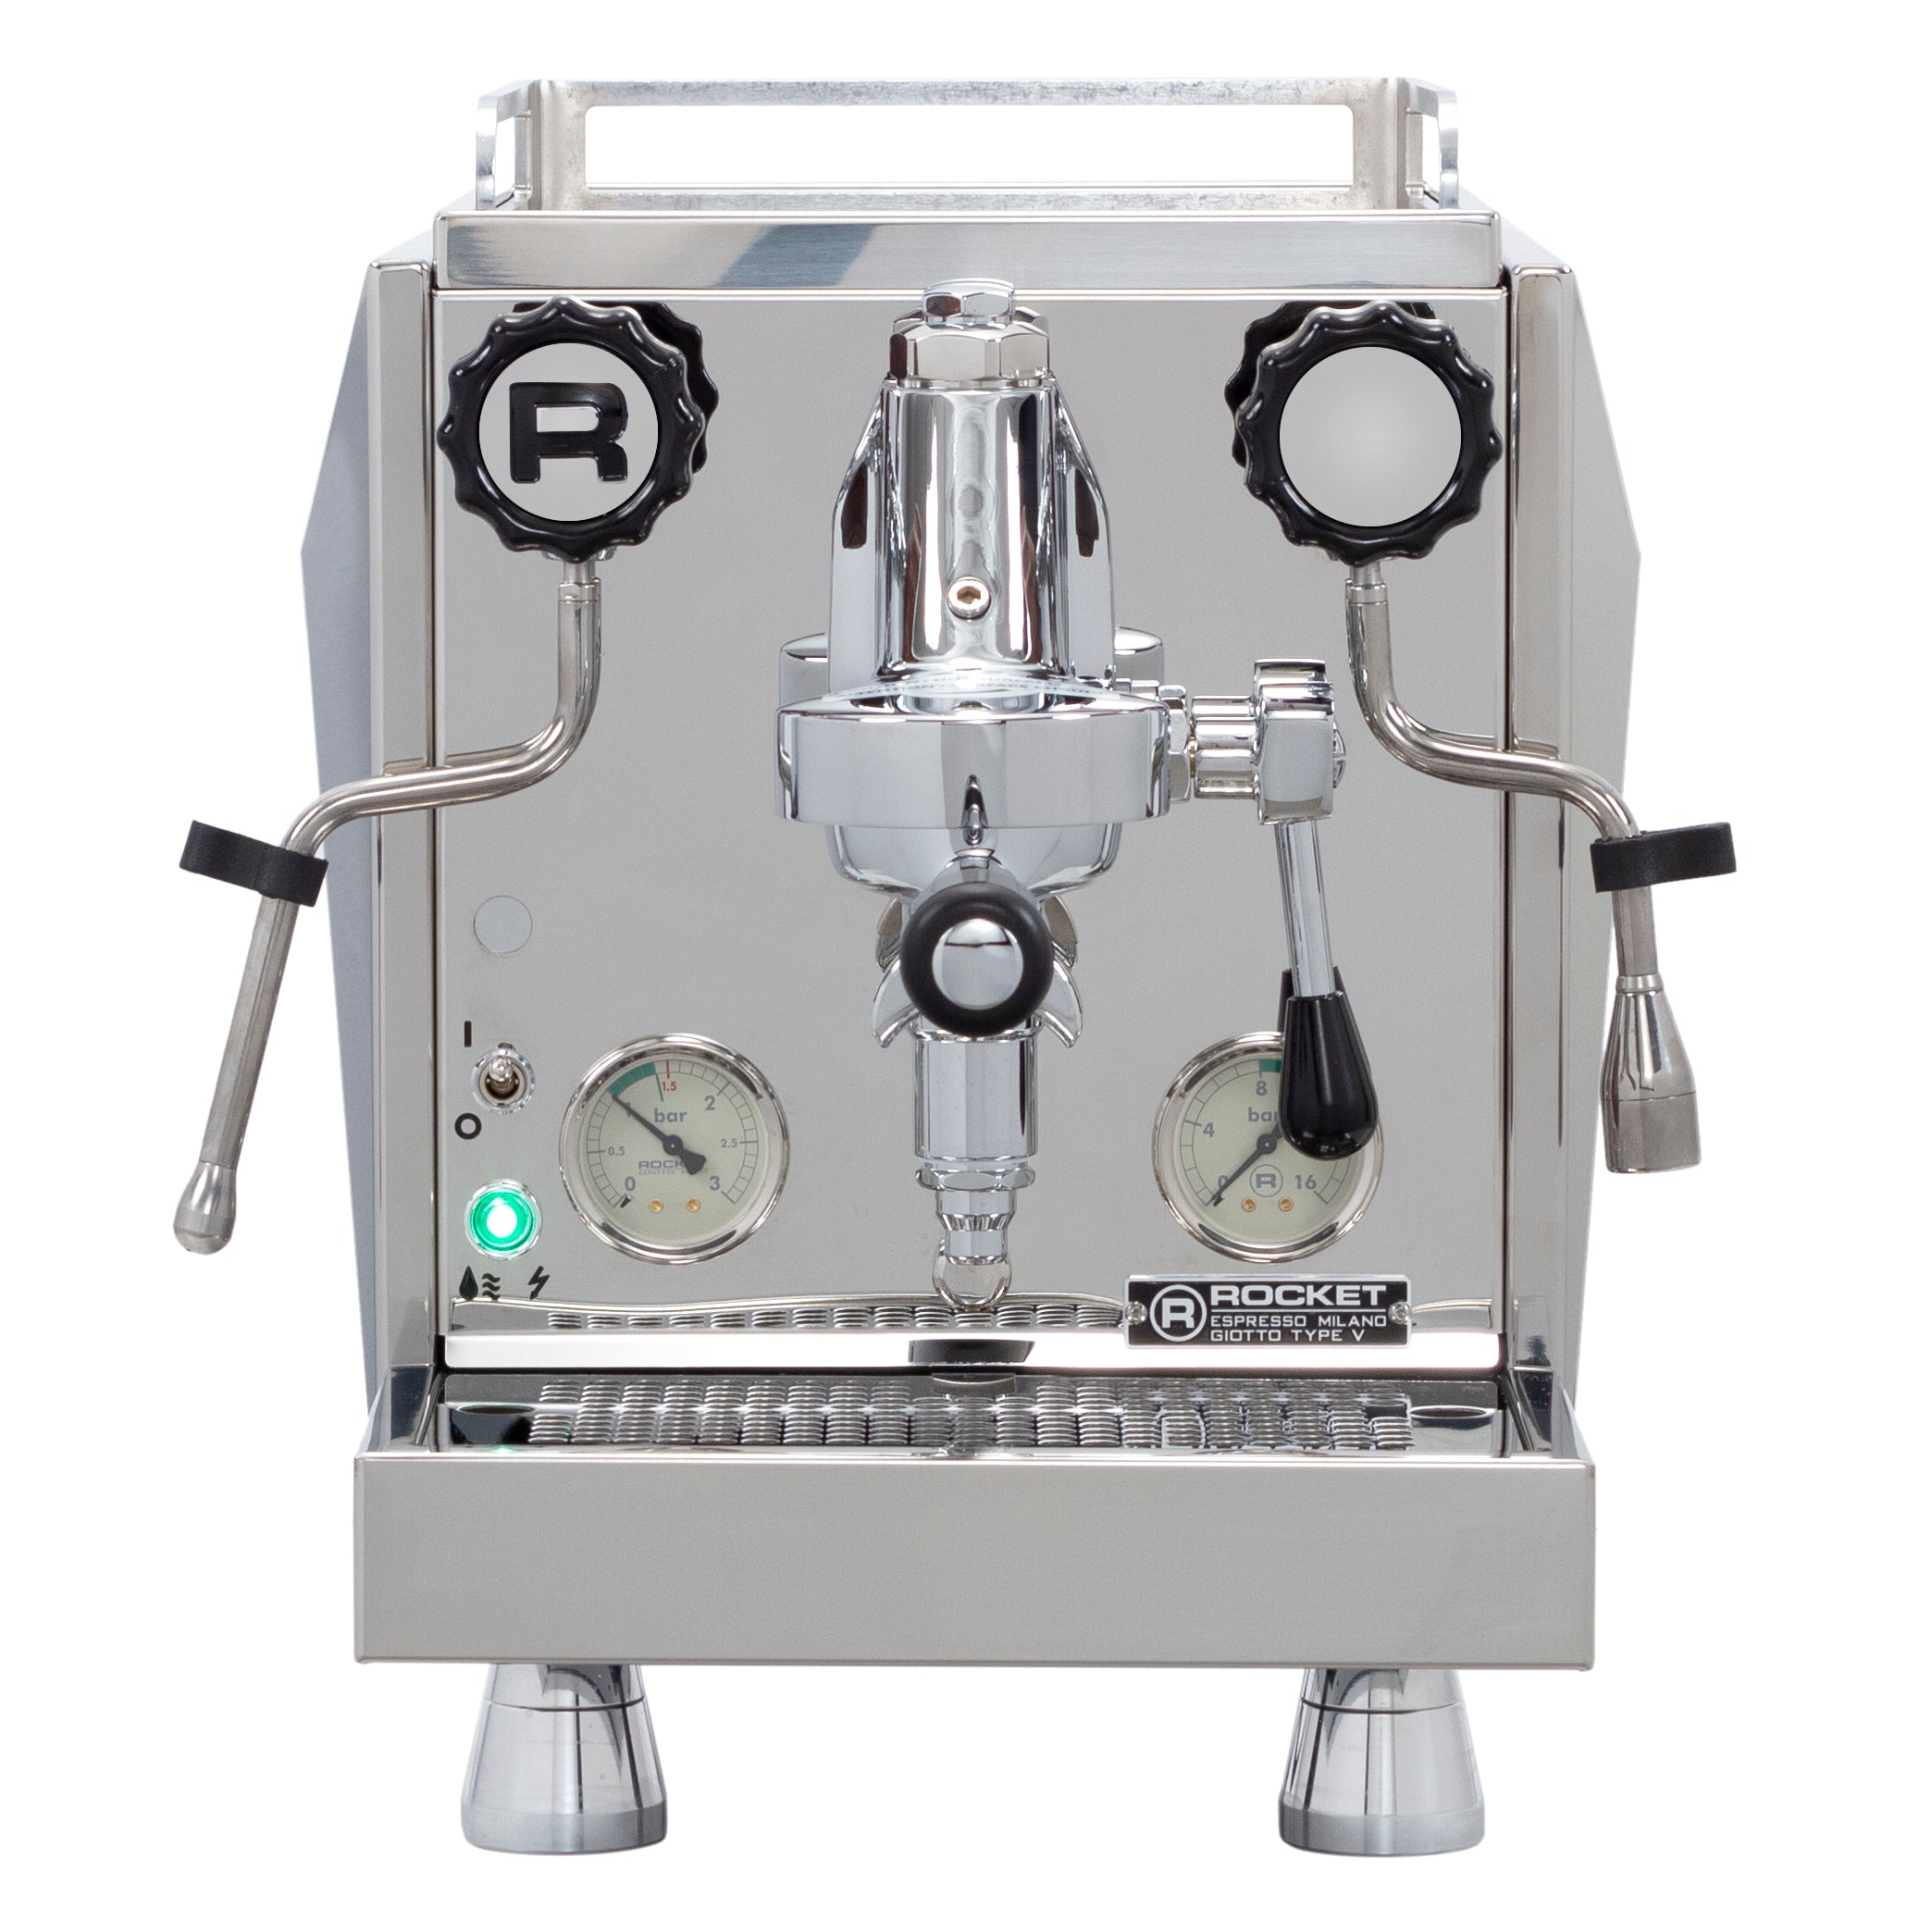 Rocket Espresso Giotto Cronometro V Espresso Machine – Whole Latte 